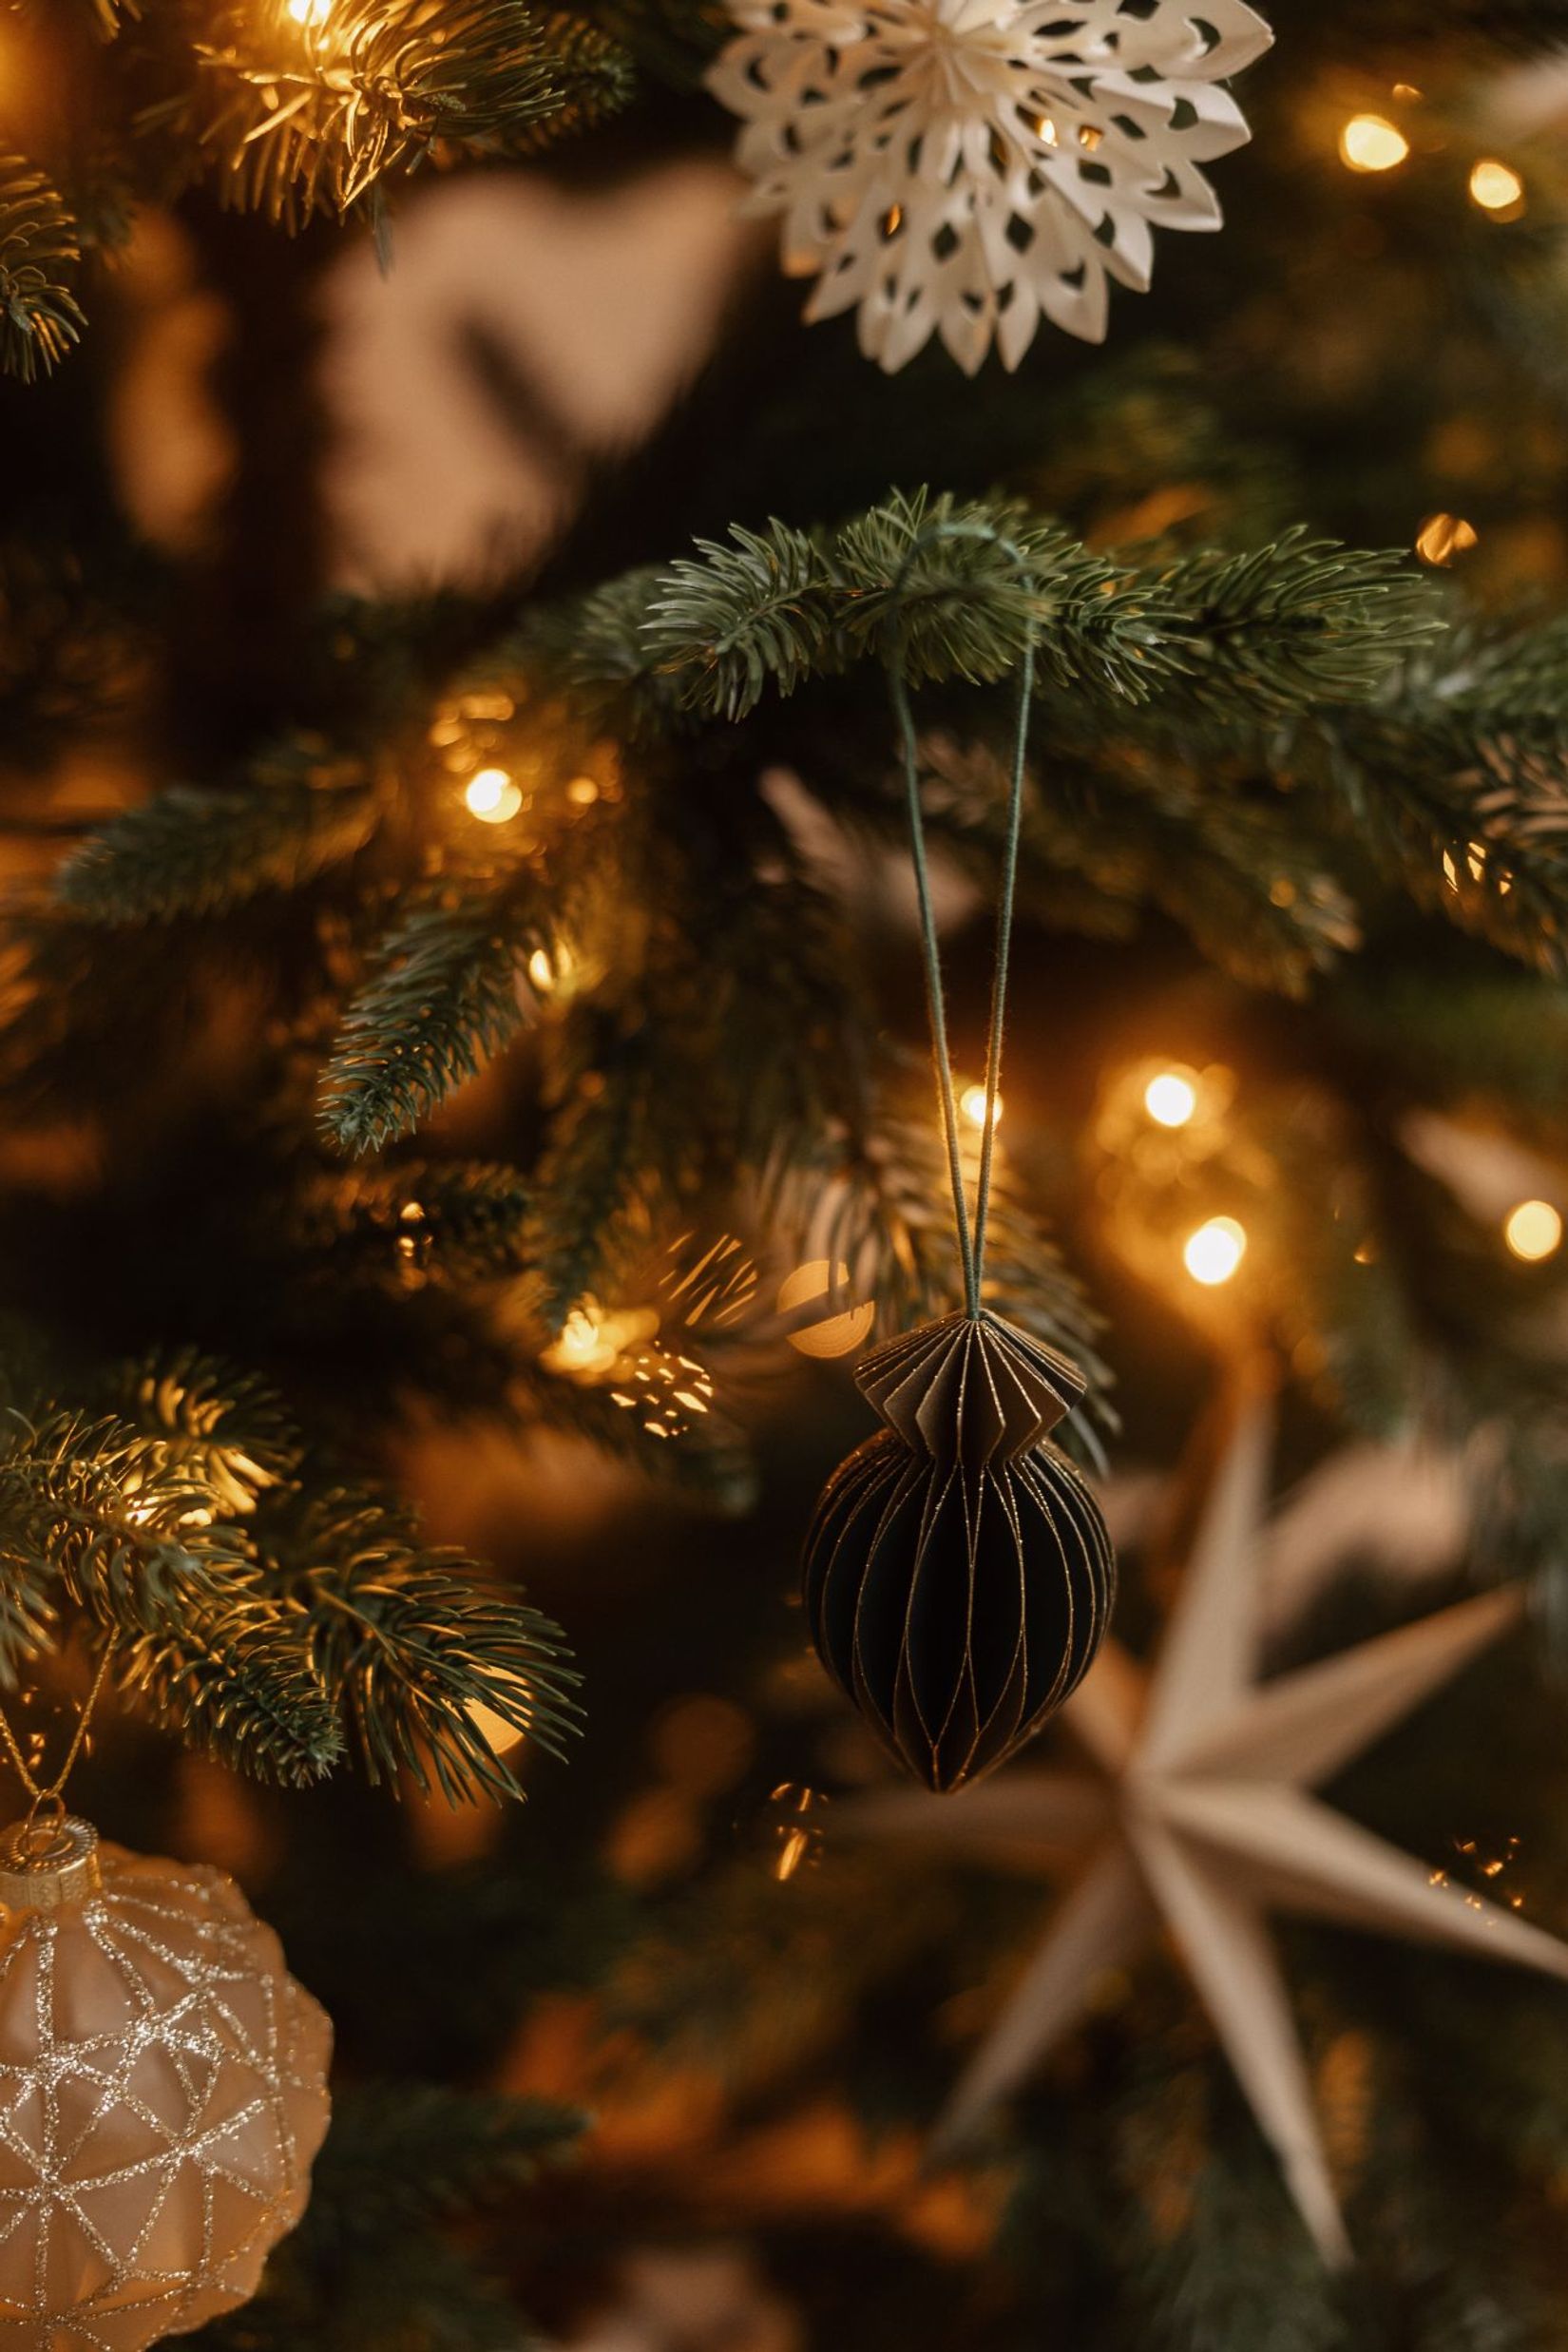 Künstlicher Premium Weihnachtsbaum Nordmanntanne LED, 180 cm hoch